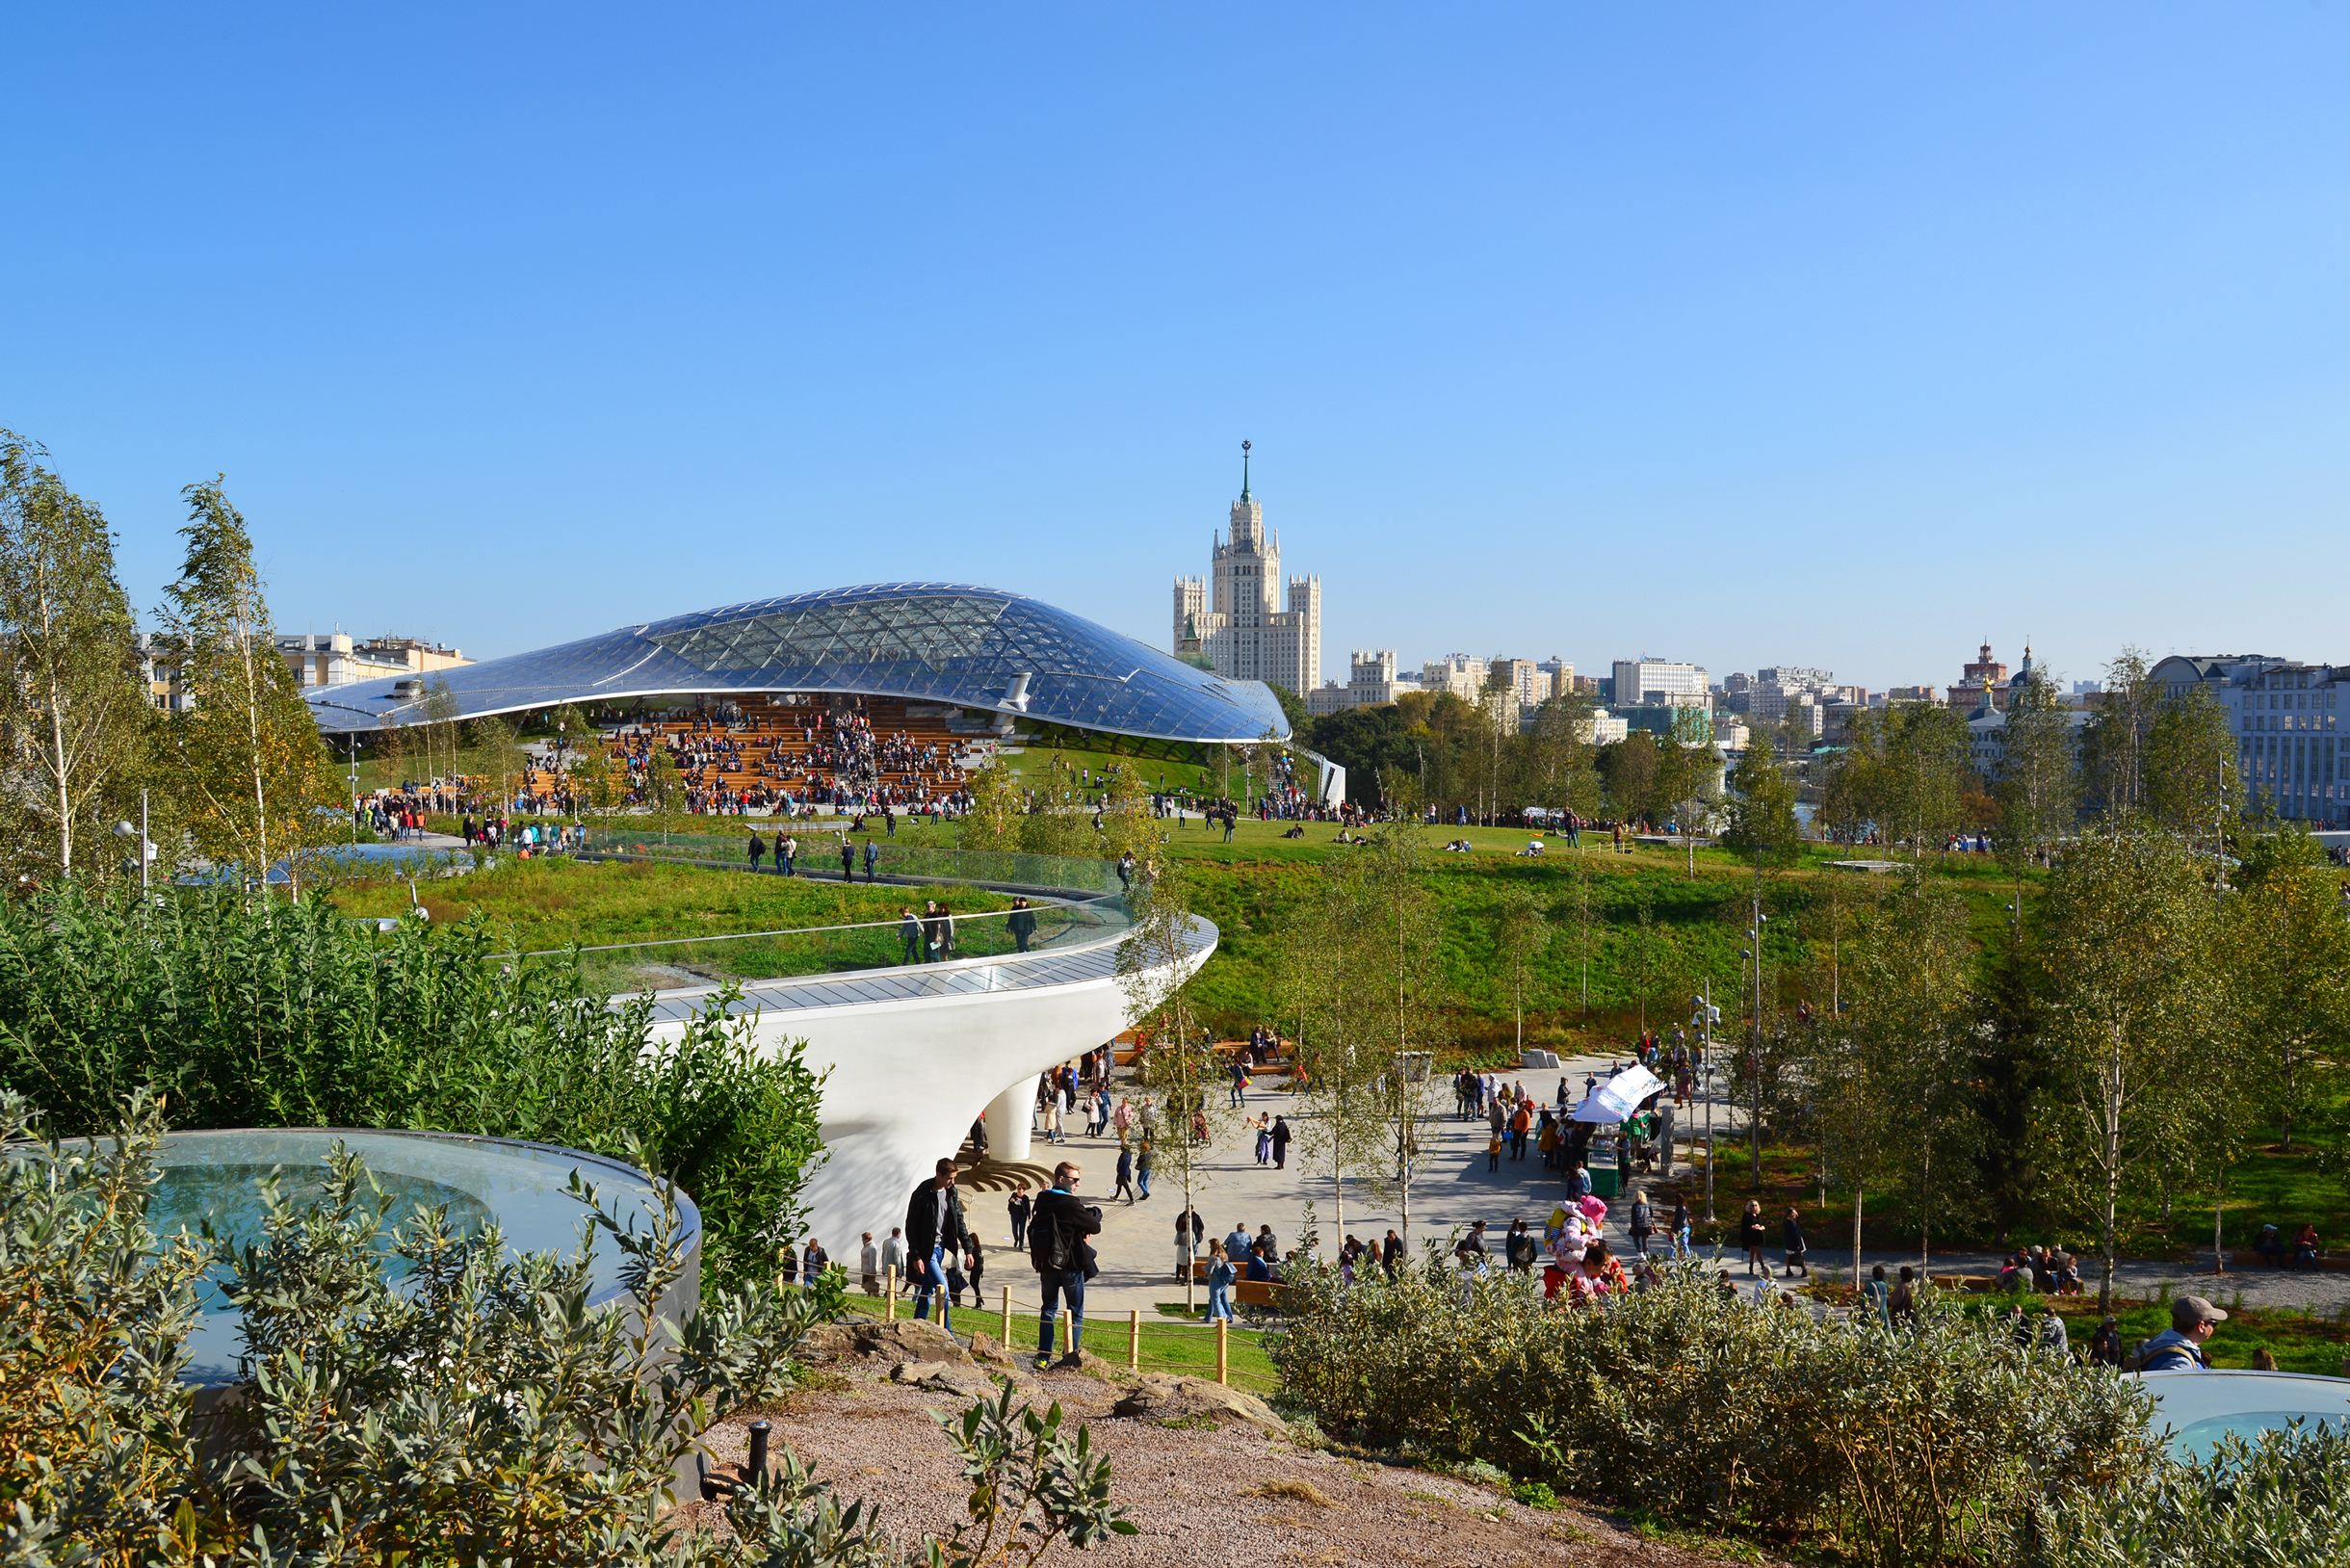 Парк «Зарядье» в Москве — пример природного урбанизма, когда в городской среде пытаются воссоздать подобие природных экосистем. В парке воссозданы четыре ландшафтные зоны России: тундра, степь, лес и болото. Фотография: BestPhotoPlus / Shutterstock / FOTODOM